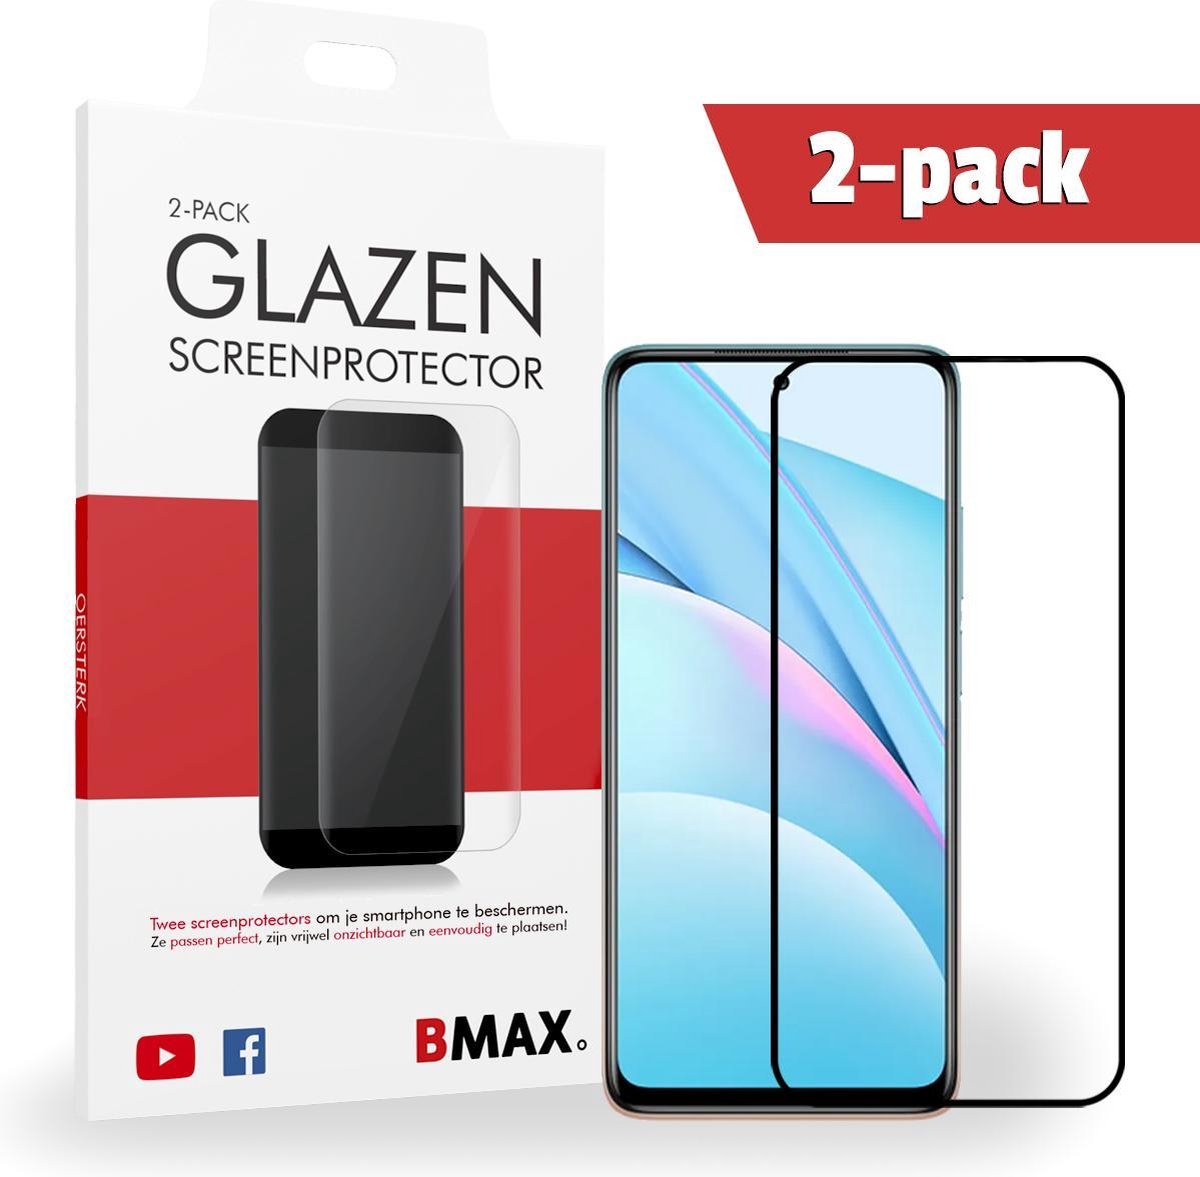 2-pack Bmax Xiaomi Mi 10t Screenprotector - Glass - Full Cover 2.5d - Black